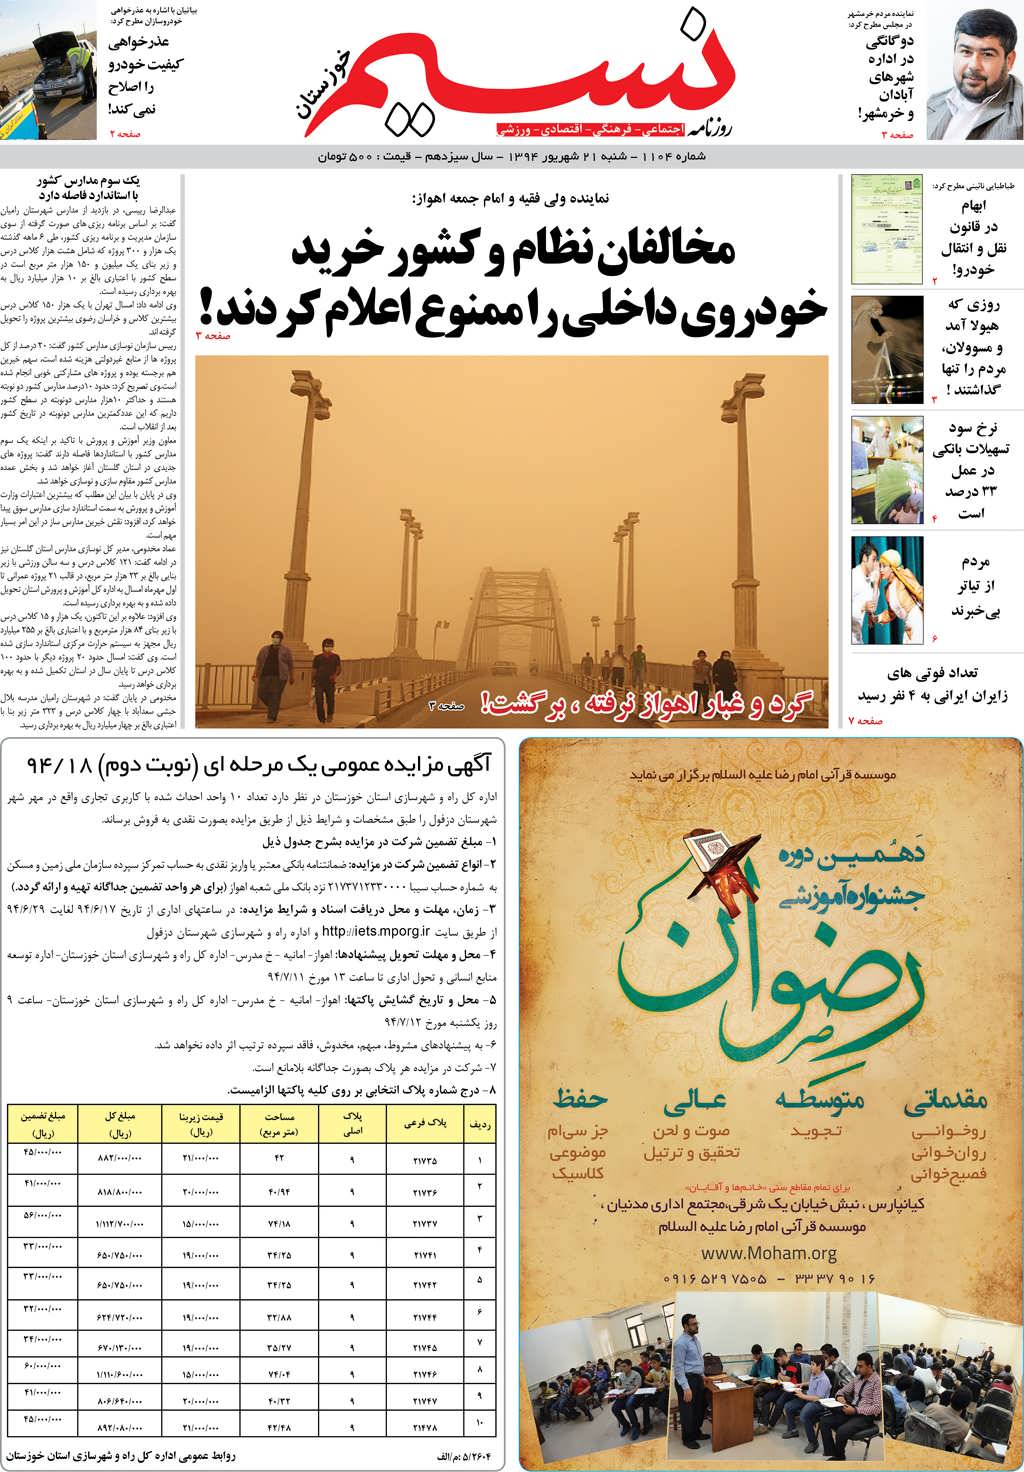 صفحه اصلی روزنامه نسیم شماره 1104